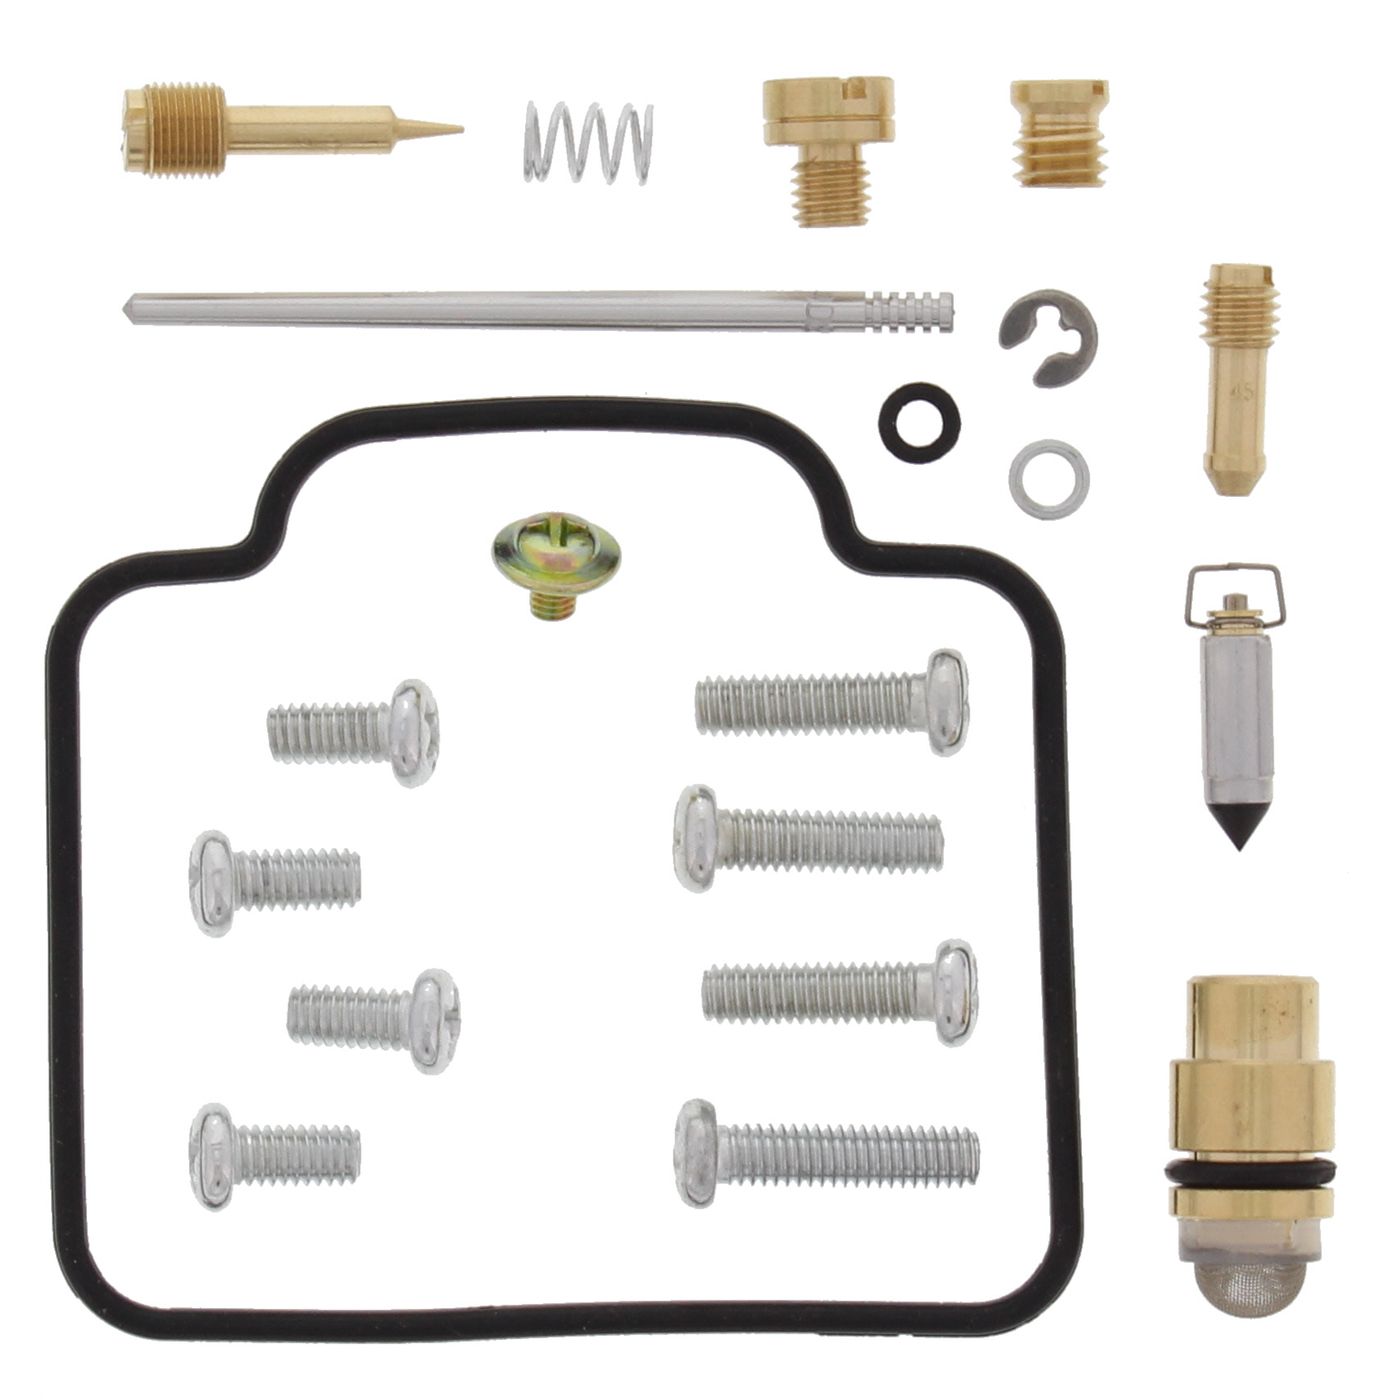 Wrp Carb Repair Kits - WRP261080 image